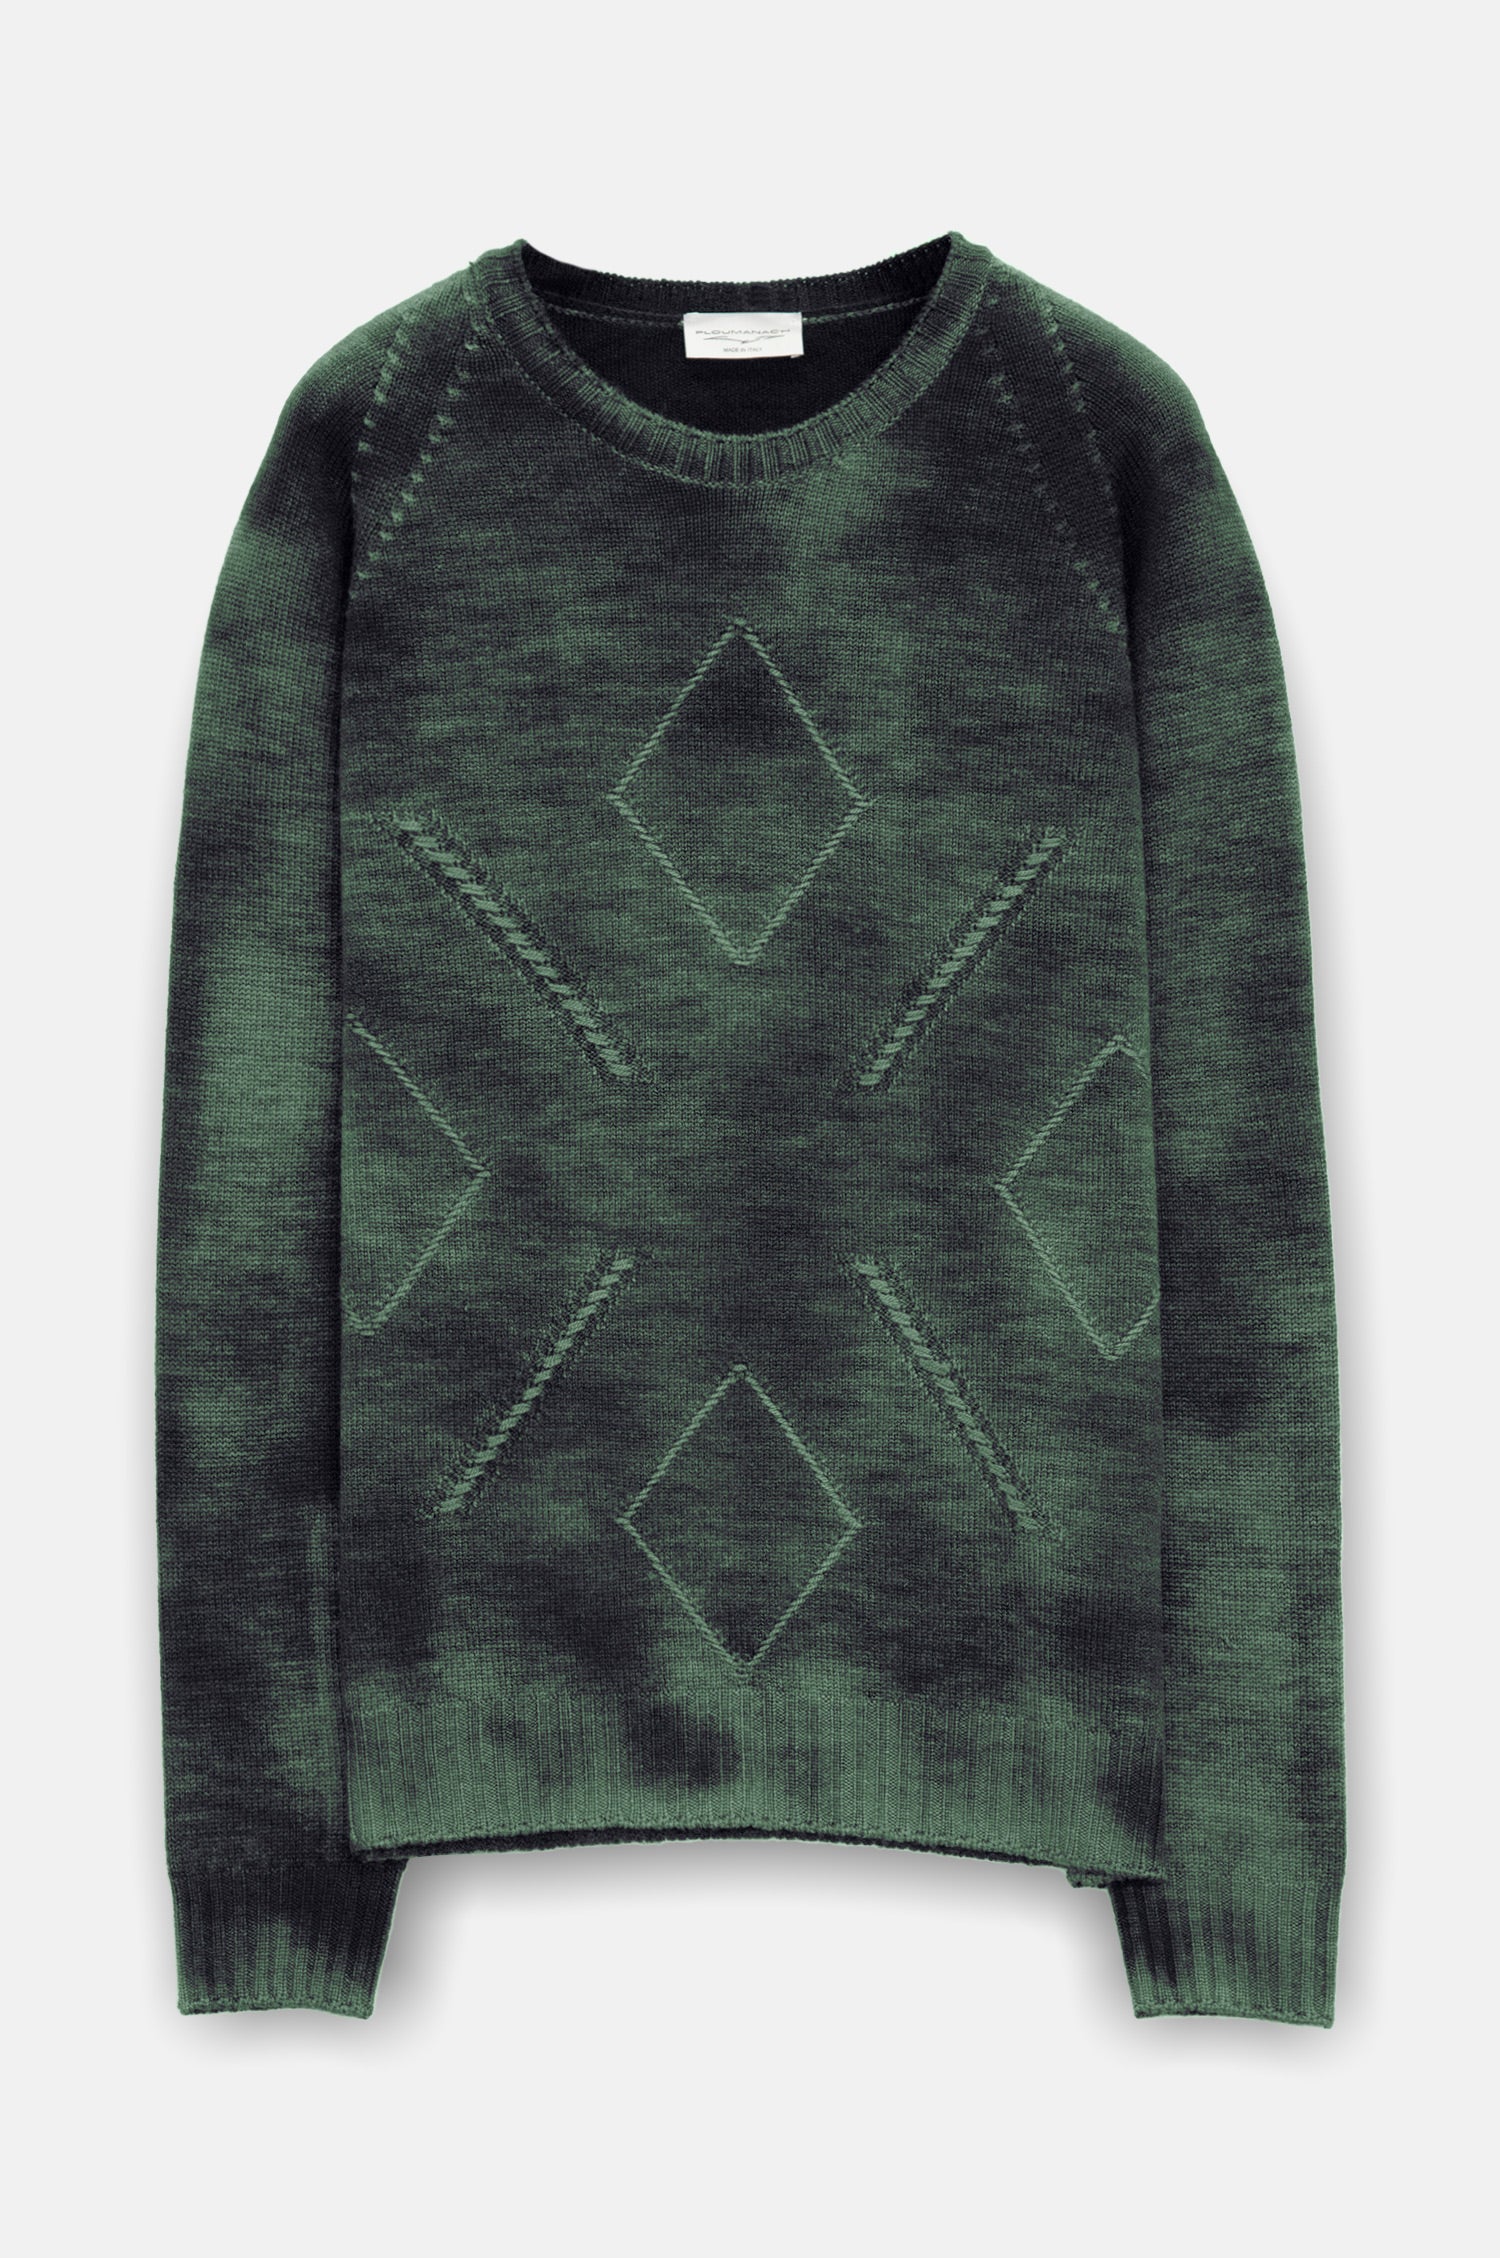 Rozel Rock Art Sweater - Dunite